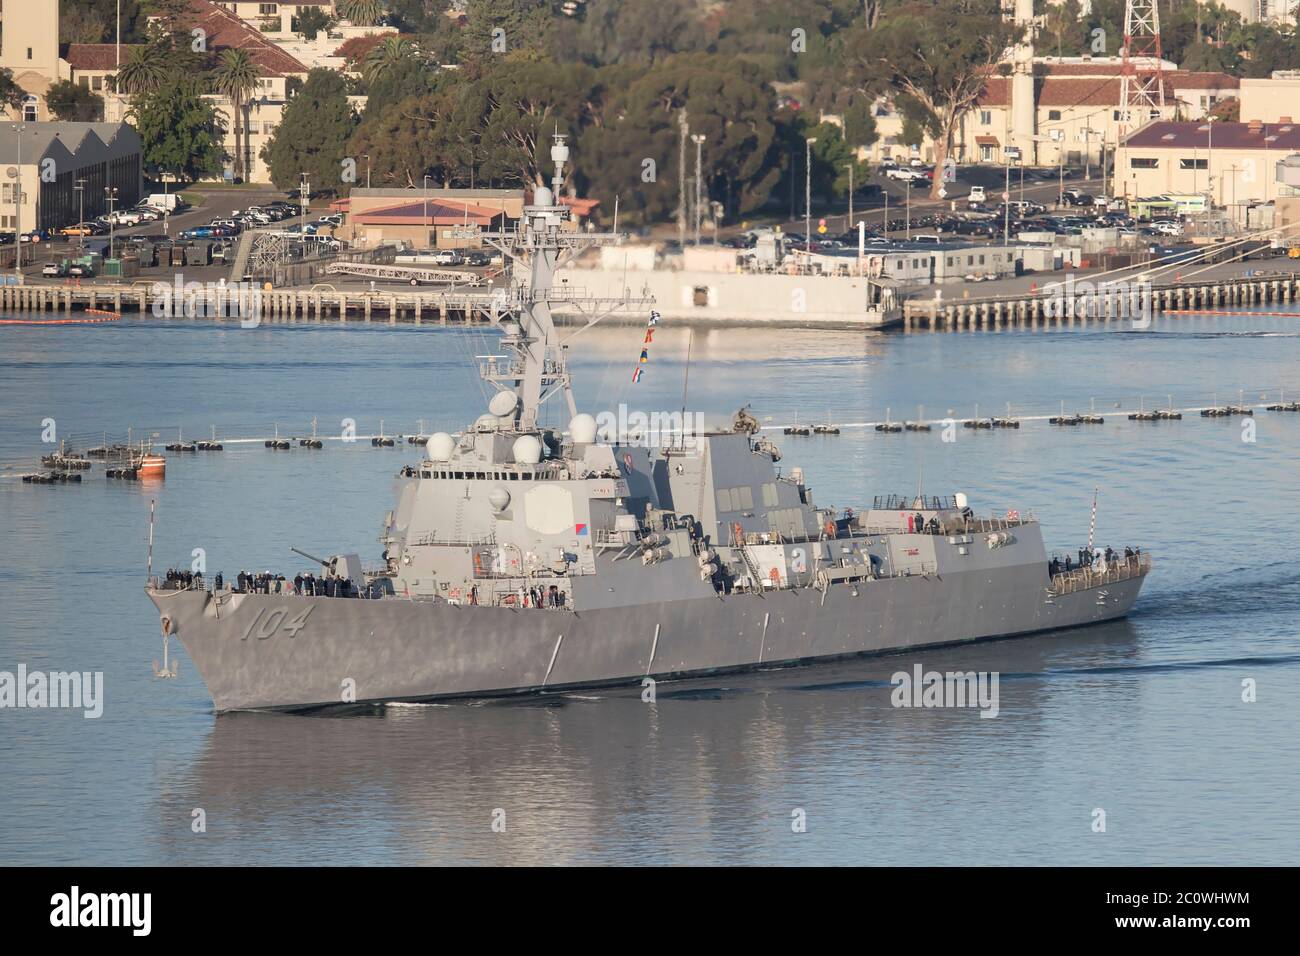 DDG-104 USS Sterett Arleigh Burke Destroyer clase de la Marina de los Estados Unidos en la base Naval de San Diego Octubre 2019 Foto de stock